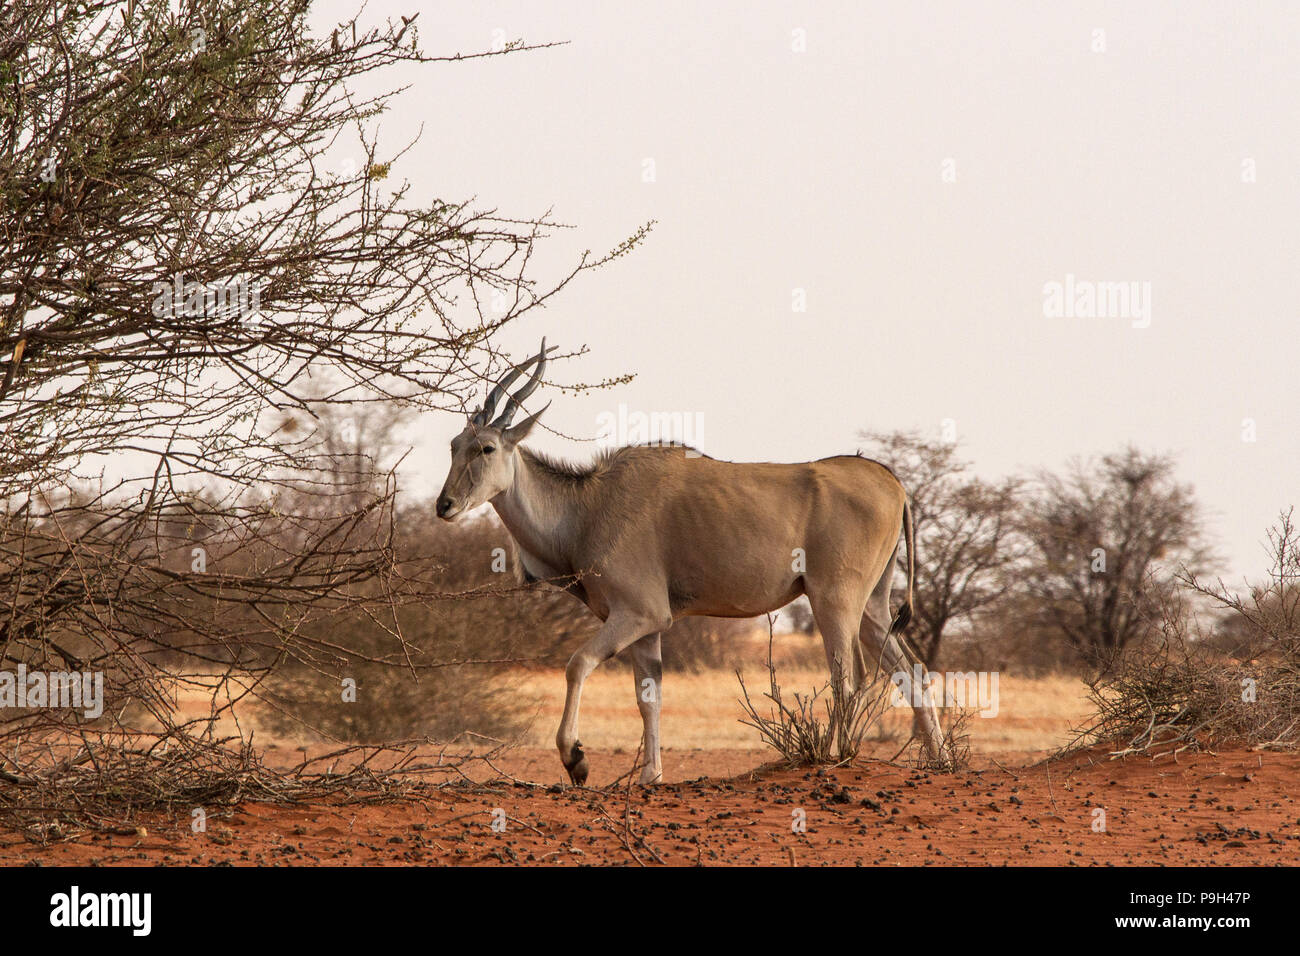 Eine gemeinsame Eland - taurotragus Oryx - südliche Eland oder eland Antilopen - zu Fuß durch Bush am Rande der roten Kalahari Wüste im Osten Namib Stockfoto